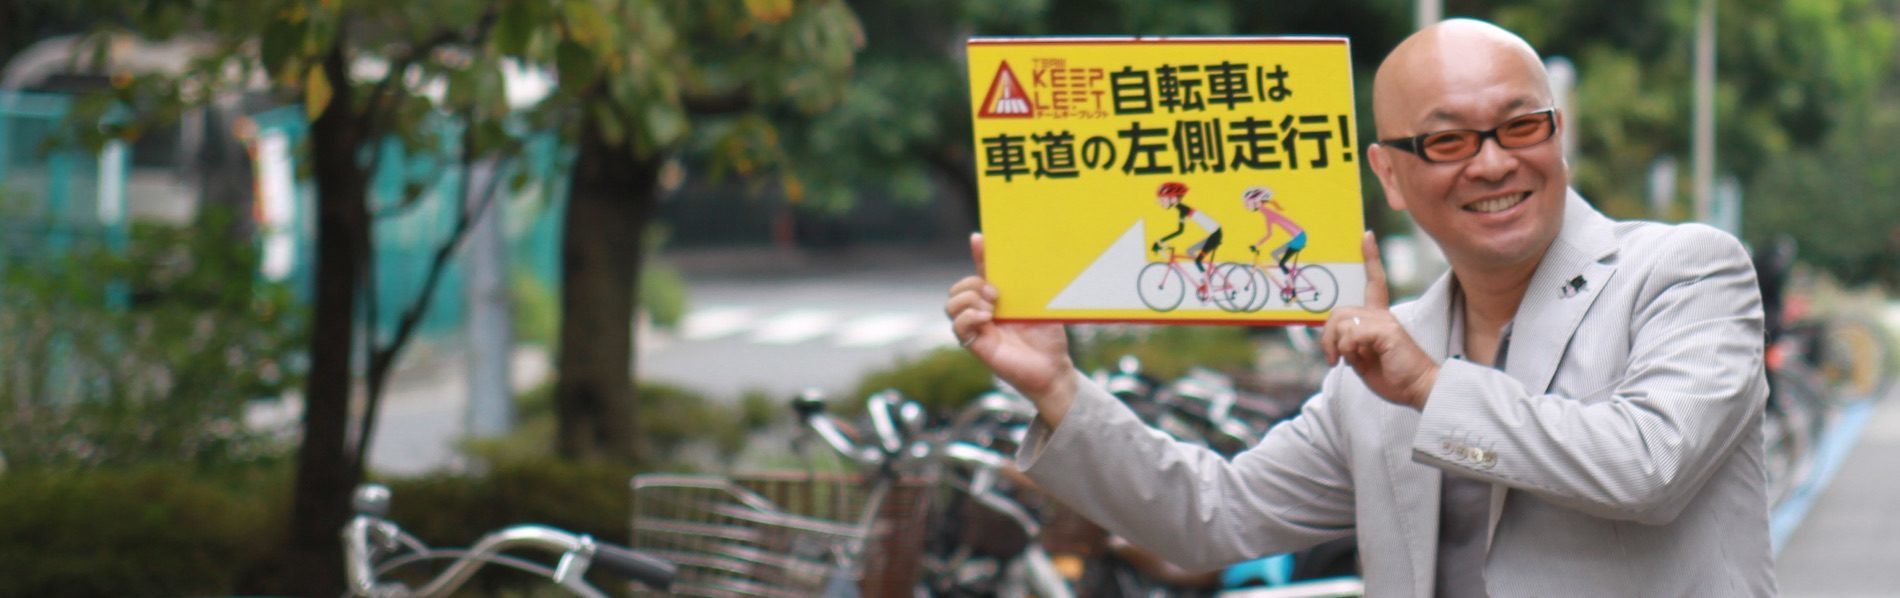 疋田智の『週刊自転車ツーキニスト』